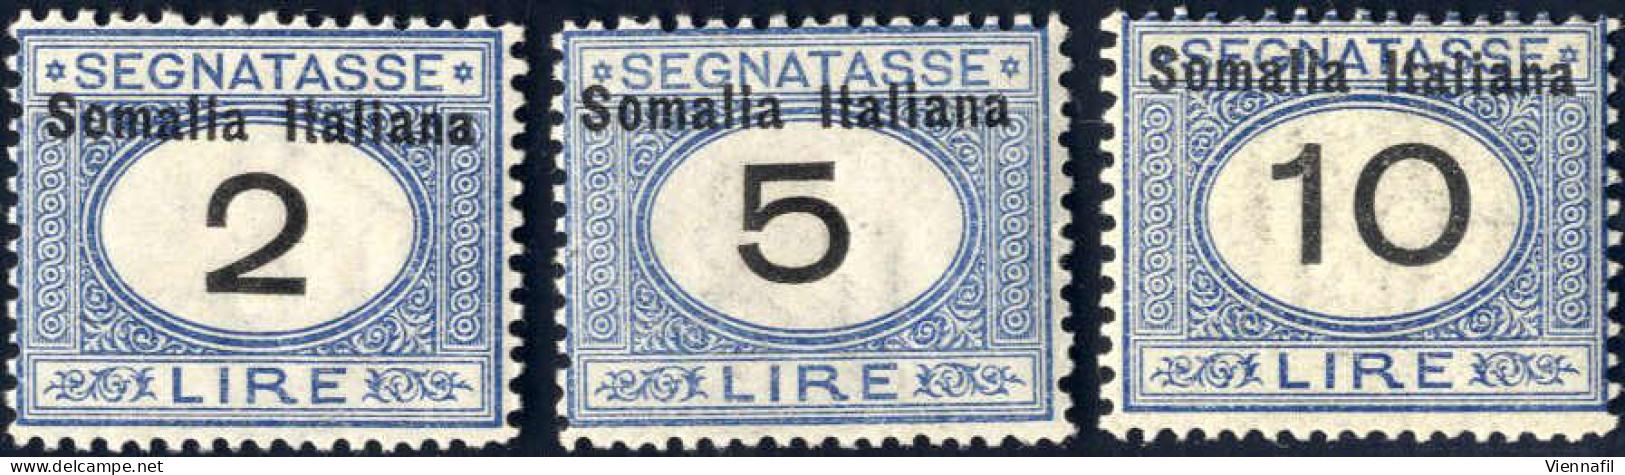 * 1926, Segnatasse D'Italia Con Soprastampa "Somalia Italiana" In Alto E Moneta Italiana, Arancio E Nero E Azzurro E Ner - Somalië